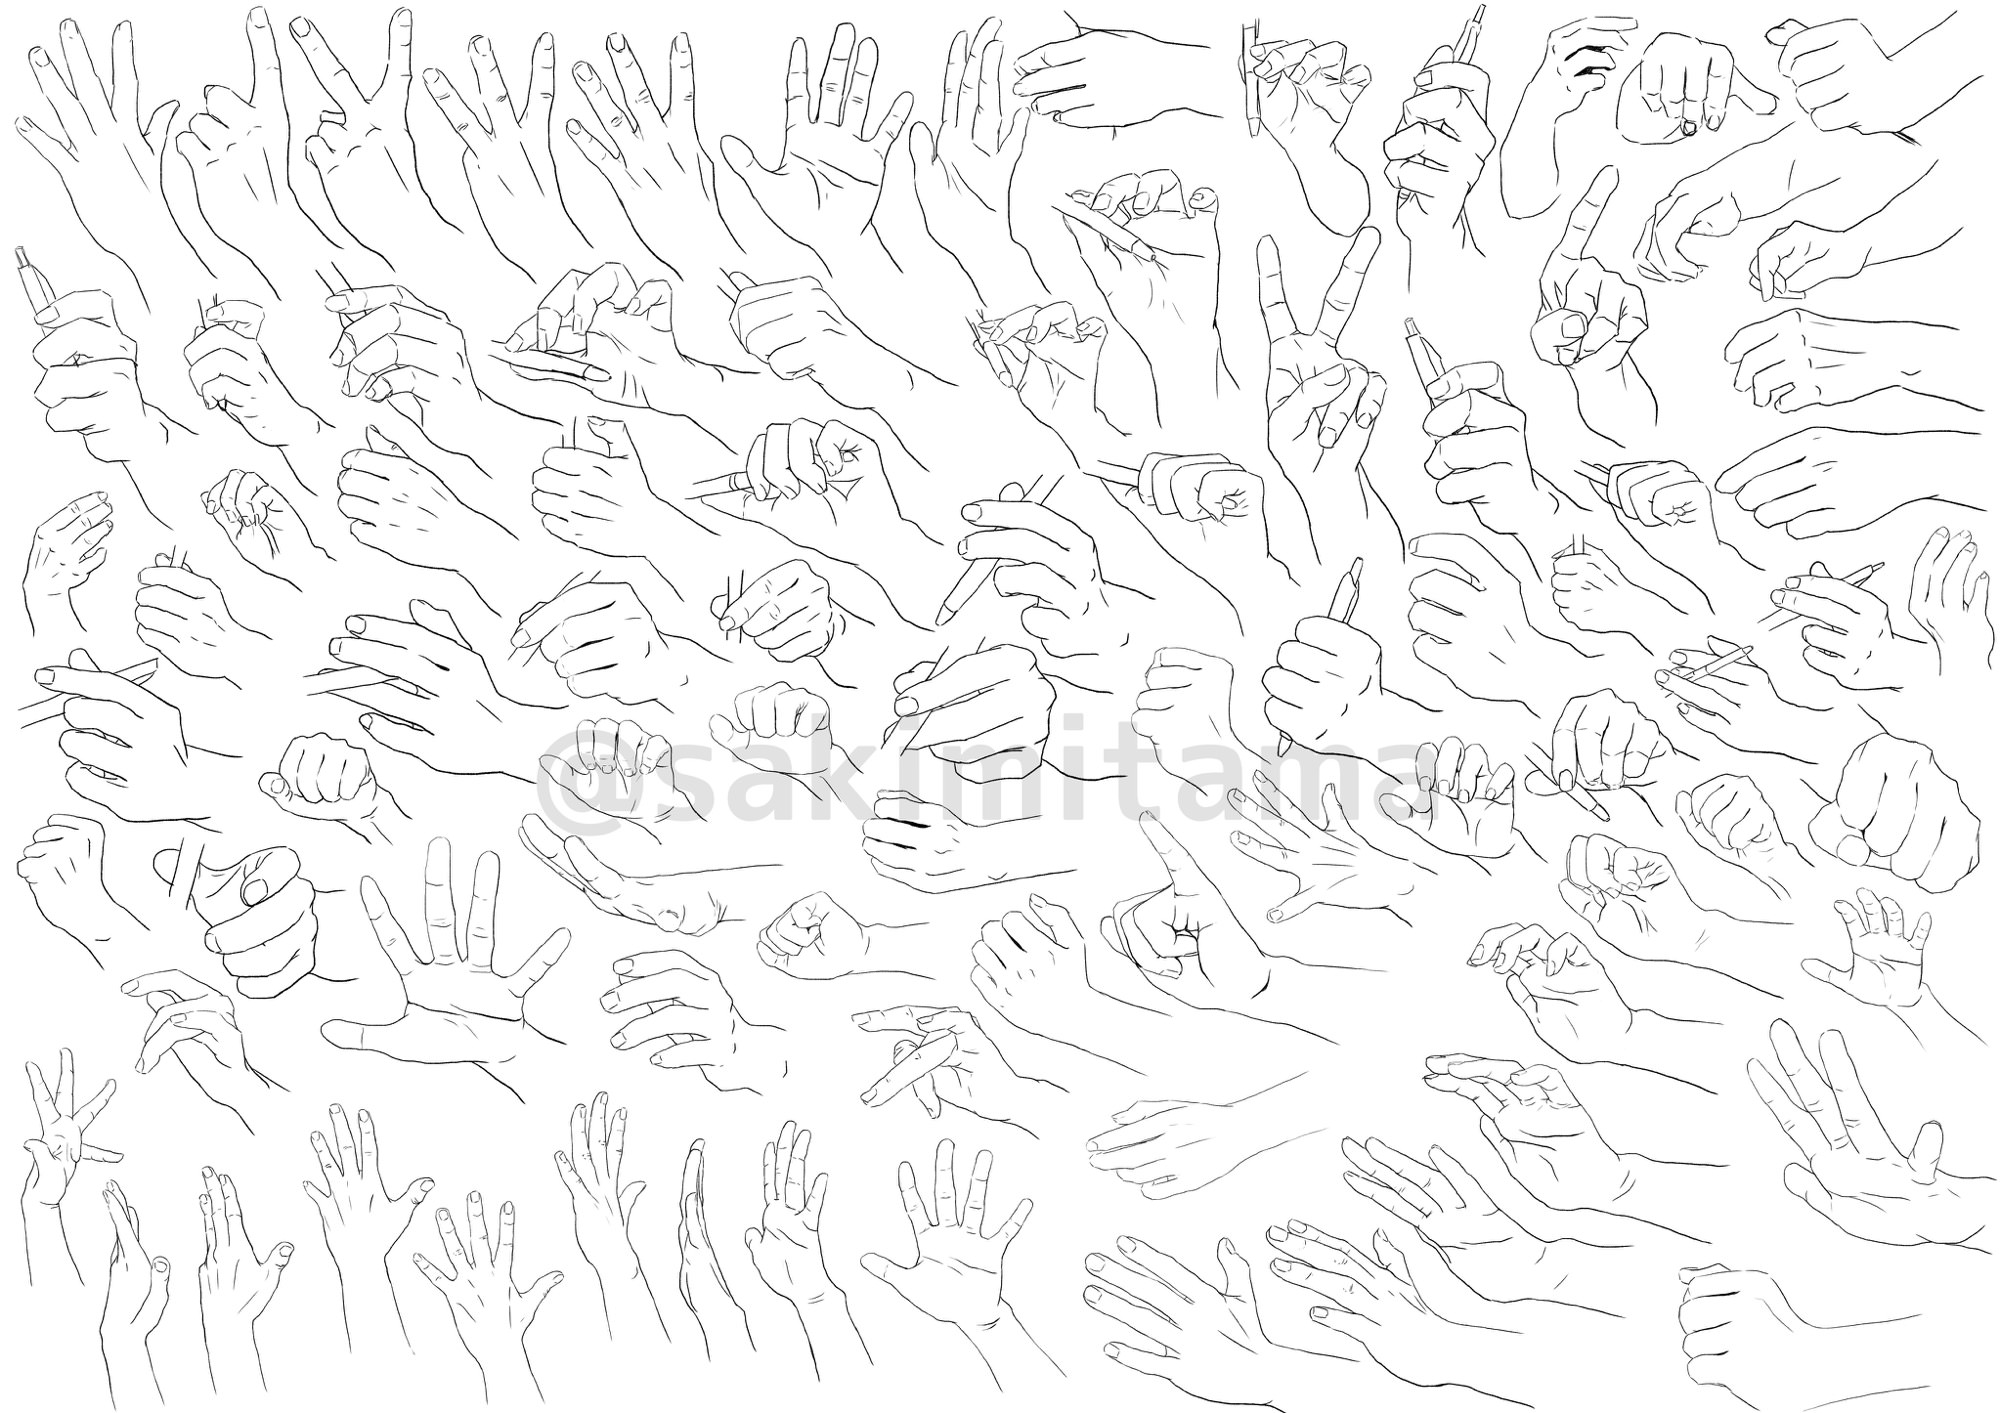 手を描く練習 練習用の資料をつくりました 描くラボ